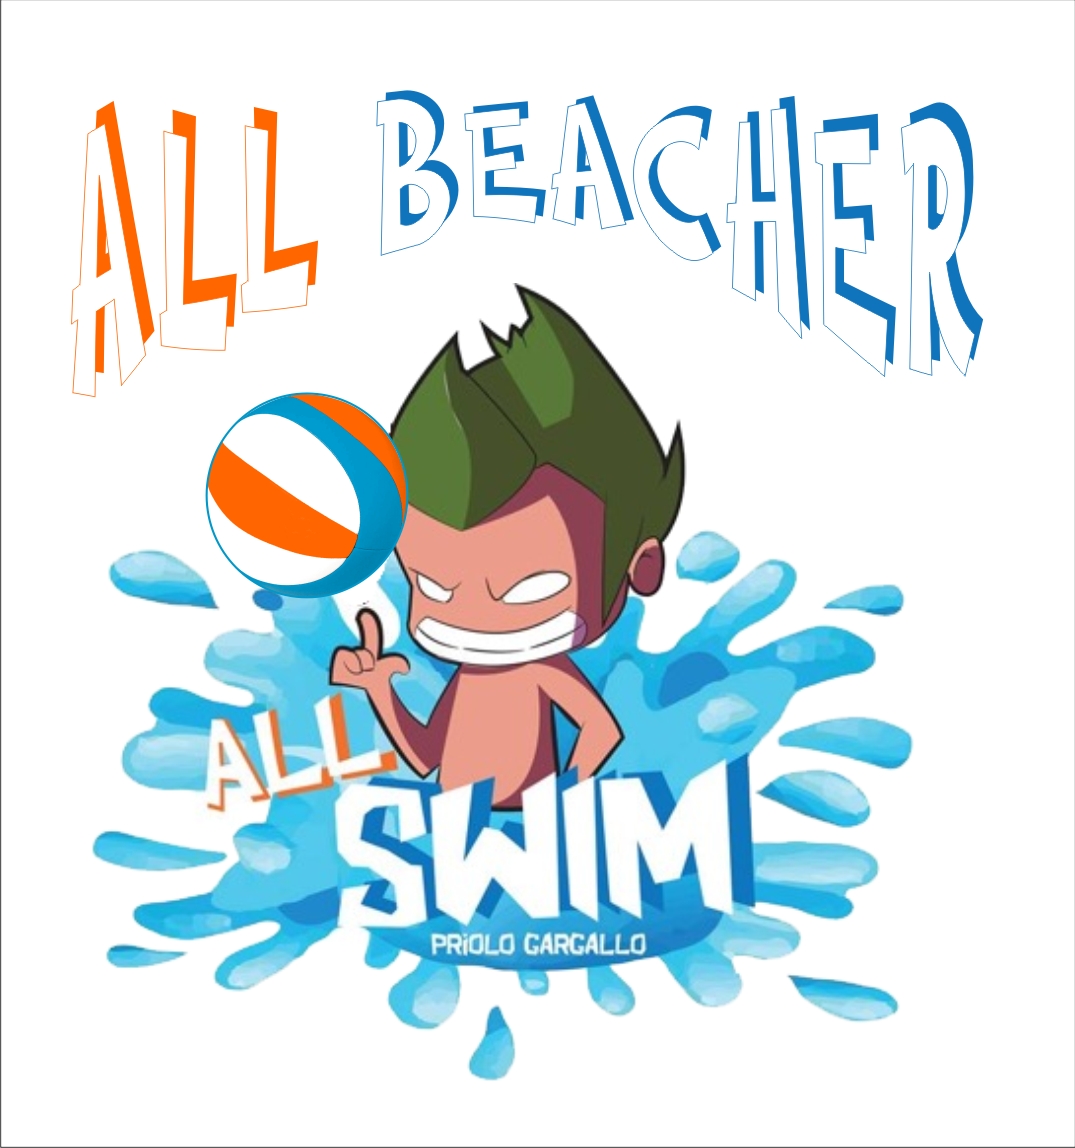 Community ALL BEACHER - Il Beach Volley per tutti